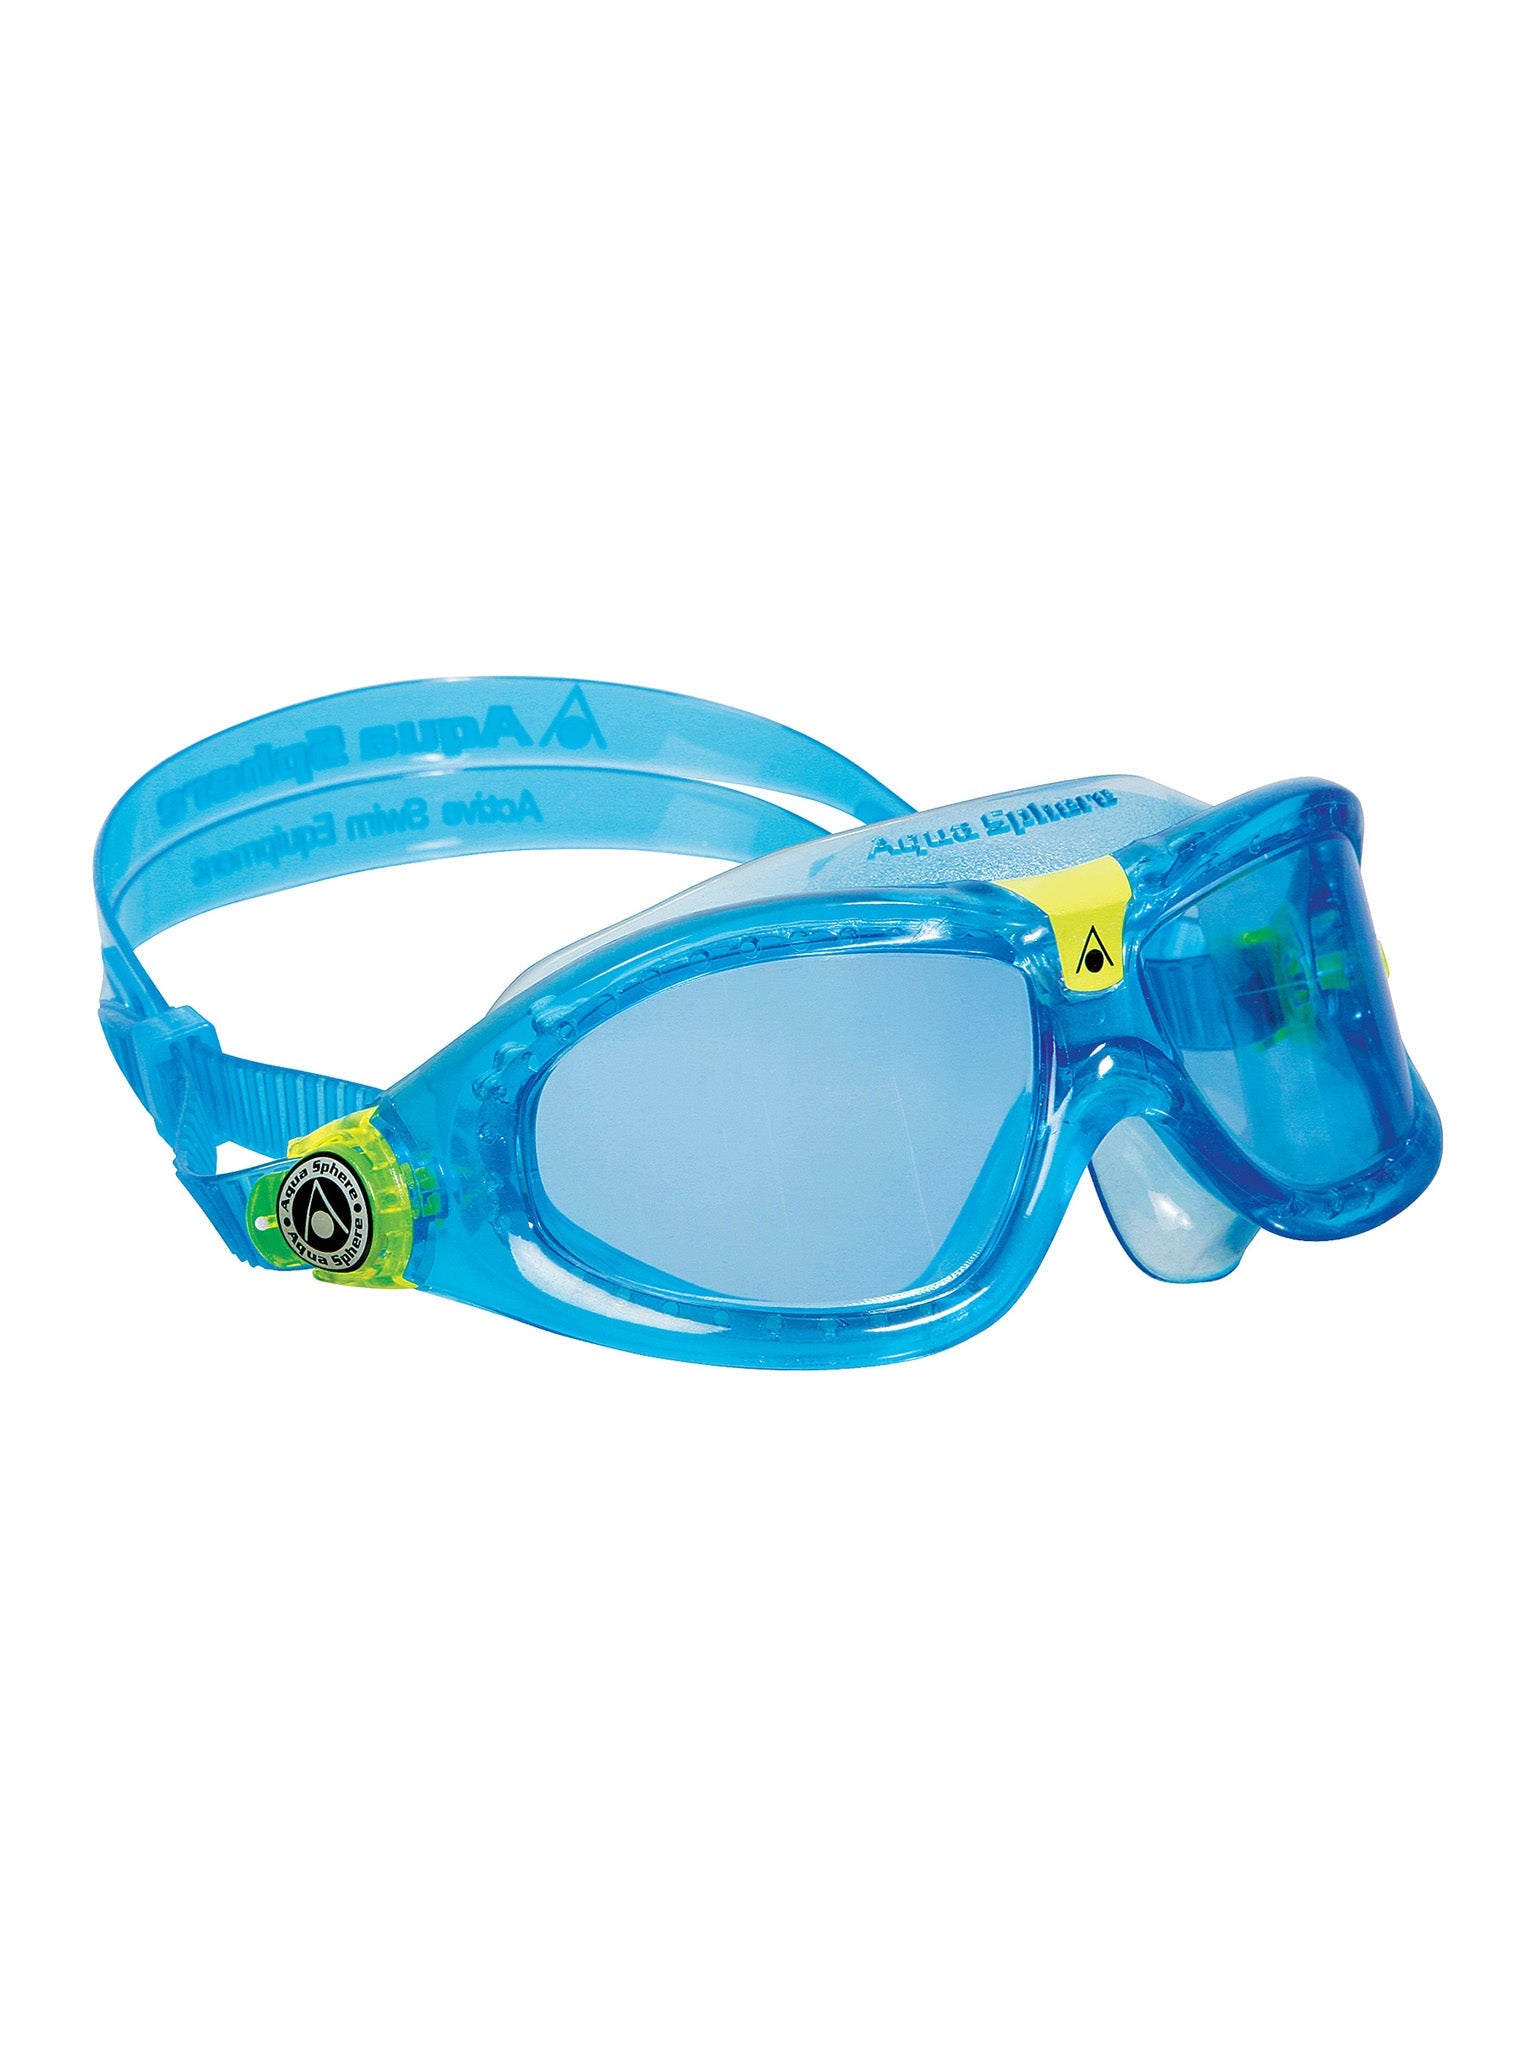 Lunettes de natation Seal Kids 2.0 pour enfants - Bleu/Bleu